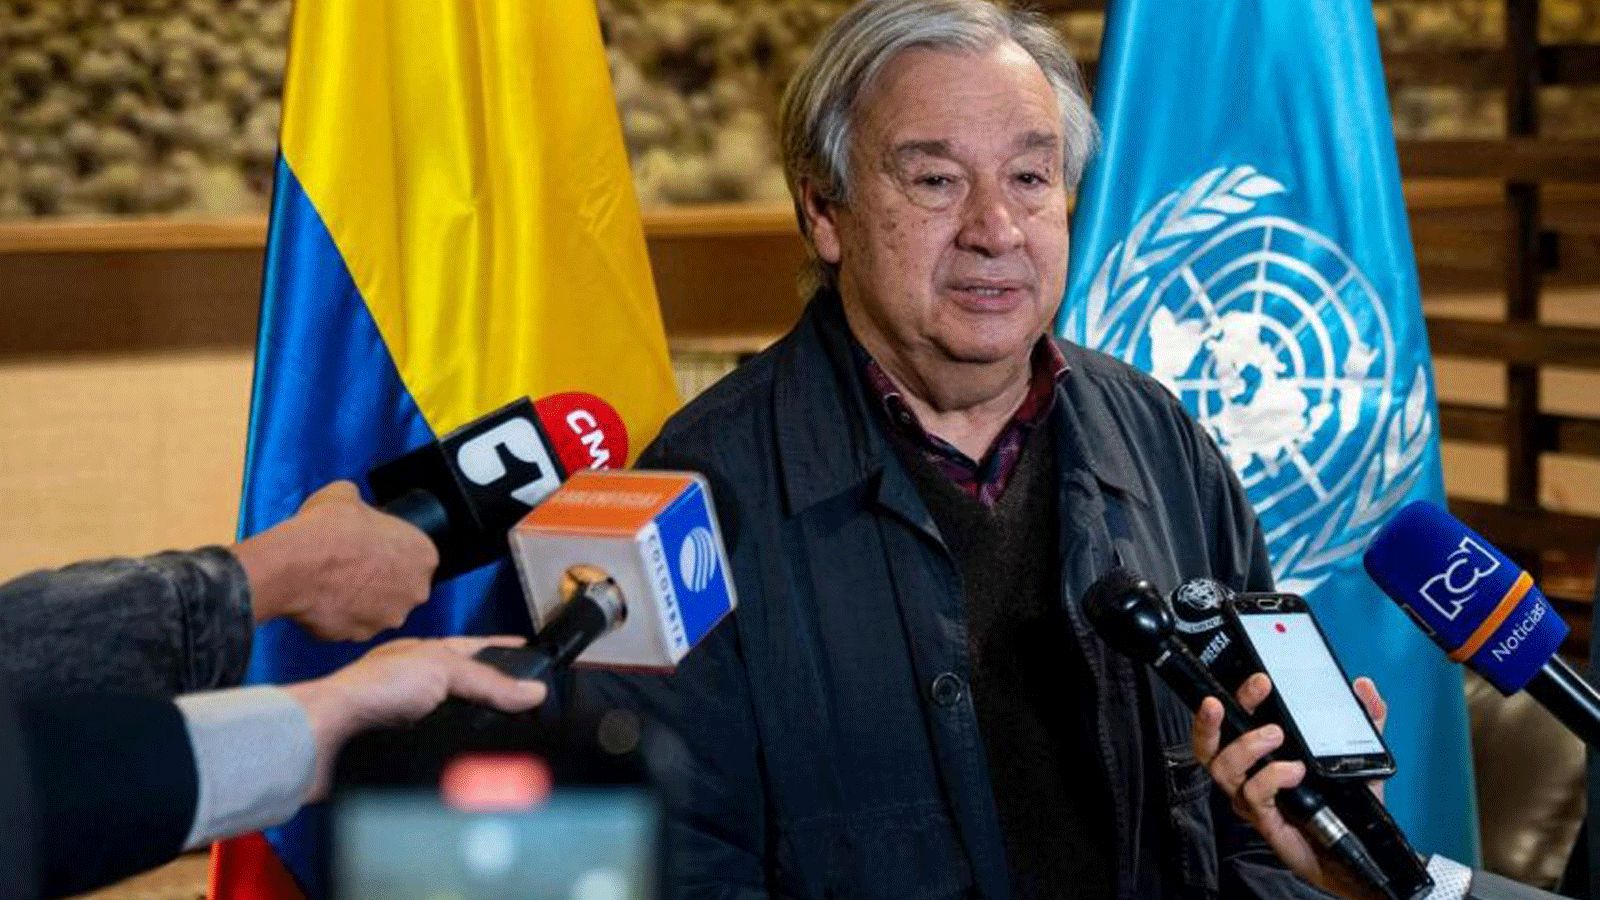 صورة للأمين العام للأمم المتحدة أنطونيو غوتيريش، وهو يتحدث مع الصحافة عند وصوله إلى كولومبيا في 22 تشرين الثاني/نوفمبر 2021(الأمم المتحدة)